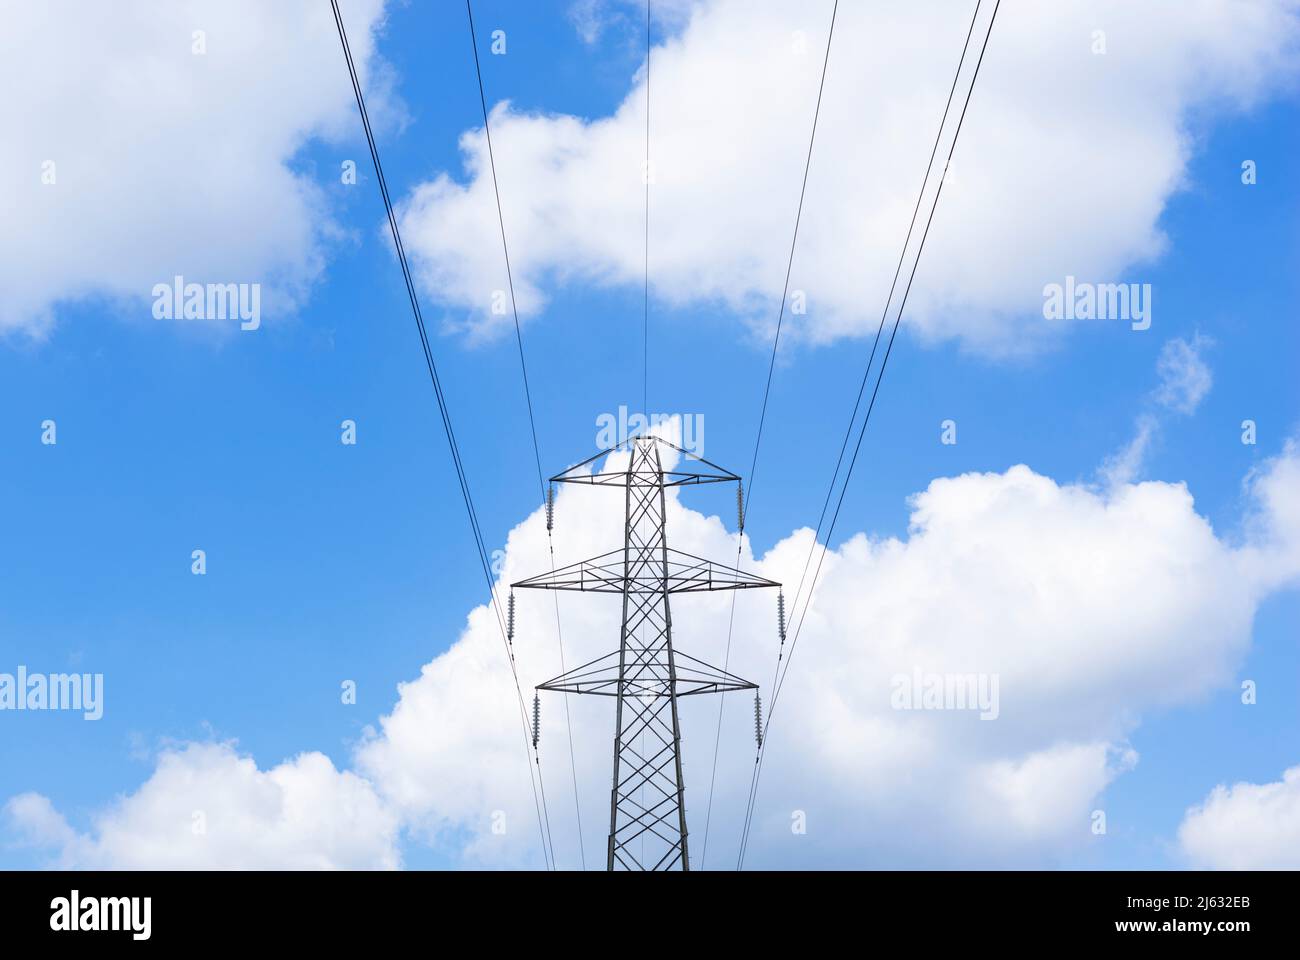 Pylônes d'électricité réseau national fournisseur d'électricité contre un ciel bleu ciel blanc duveteux nuages Angleterre GB Royaume-Uni Europe Banque D'Images